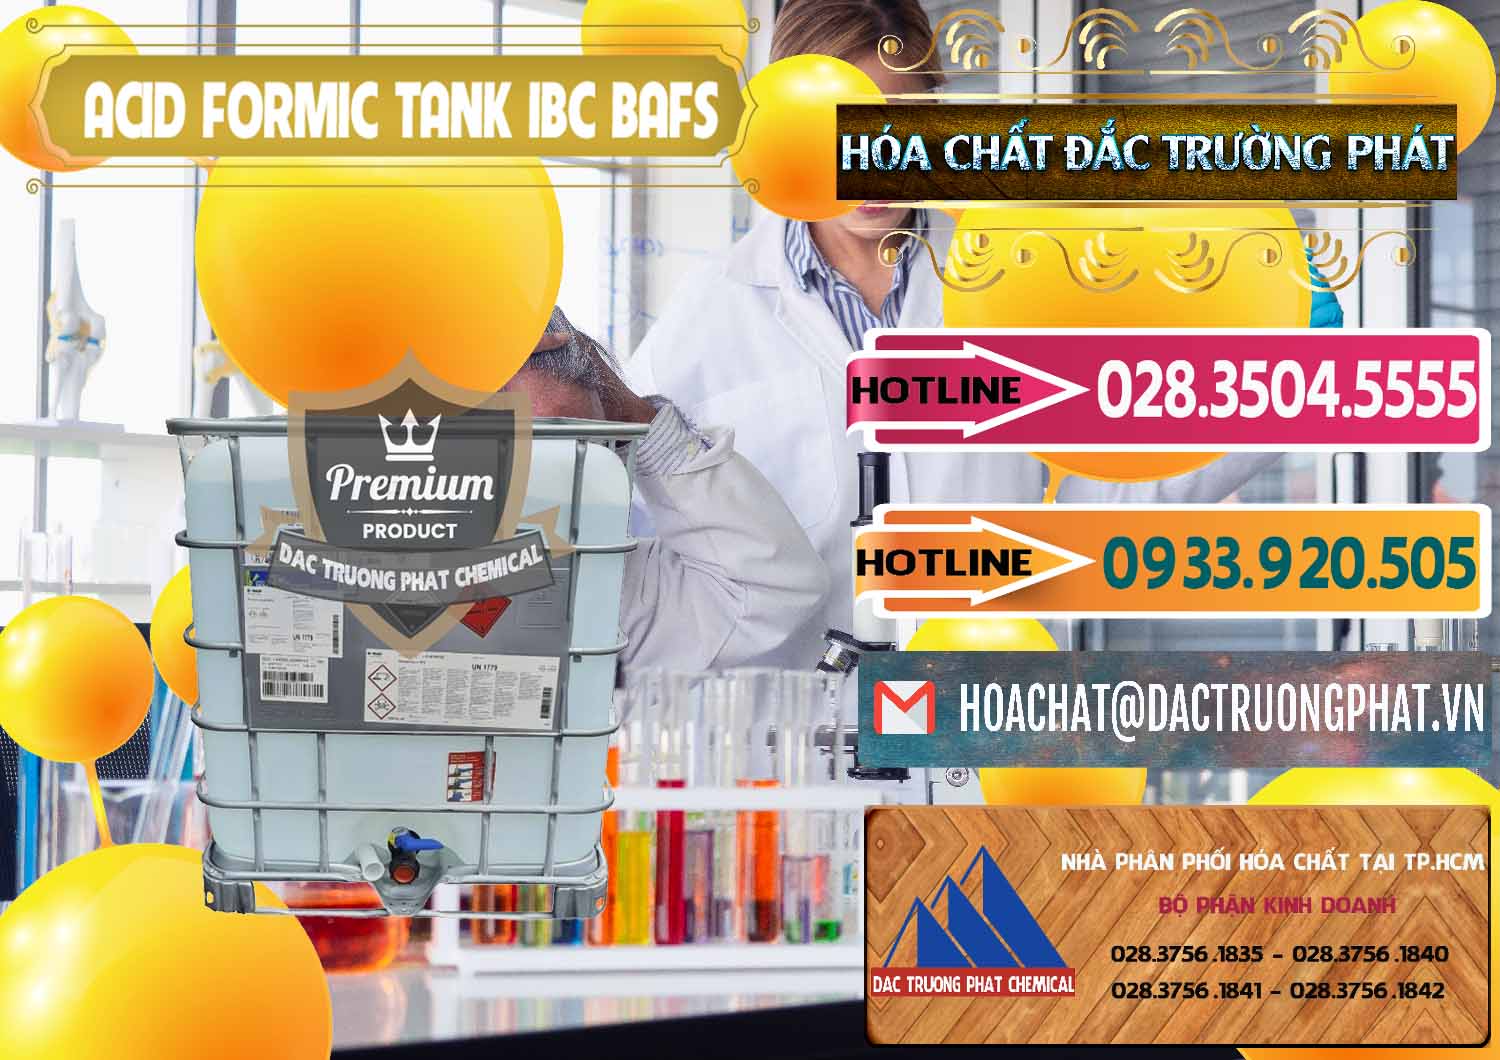 Nơi chuyên kinh doanh _ bán Acid Formic - Axit Formic Tank - Bồn IBC BASF Đức - 0366 - Nhà cung cấp và nhập khẩu hóa chất tại TP.HCM - dactruongphat.vn